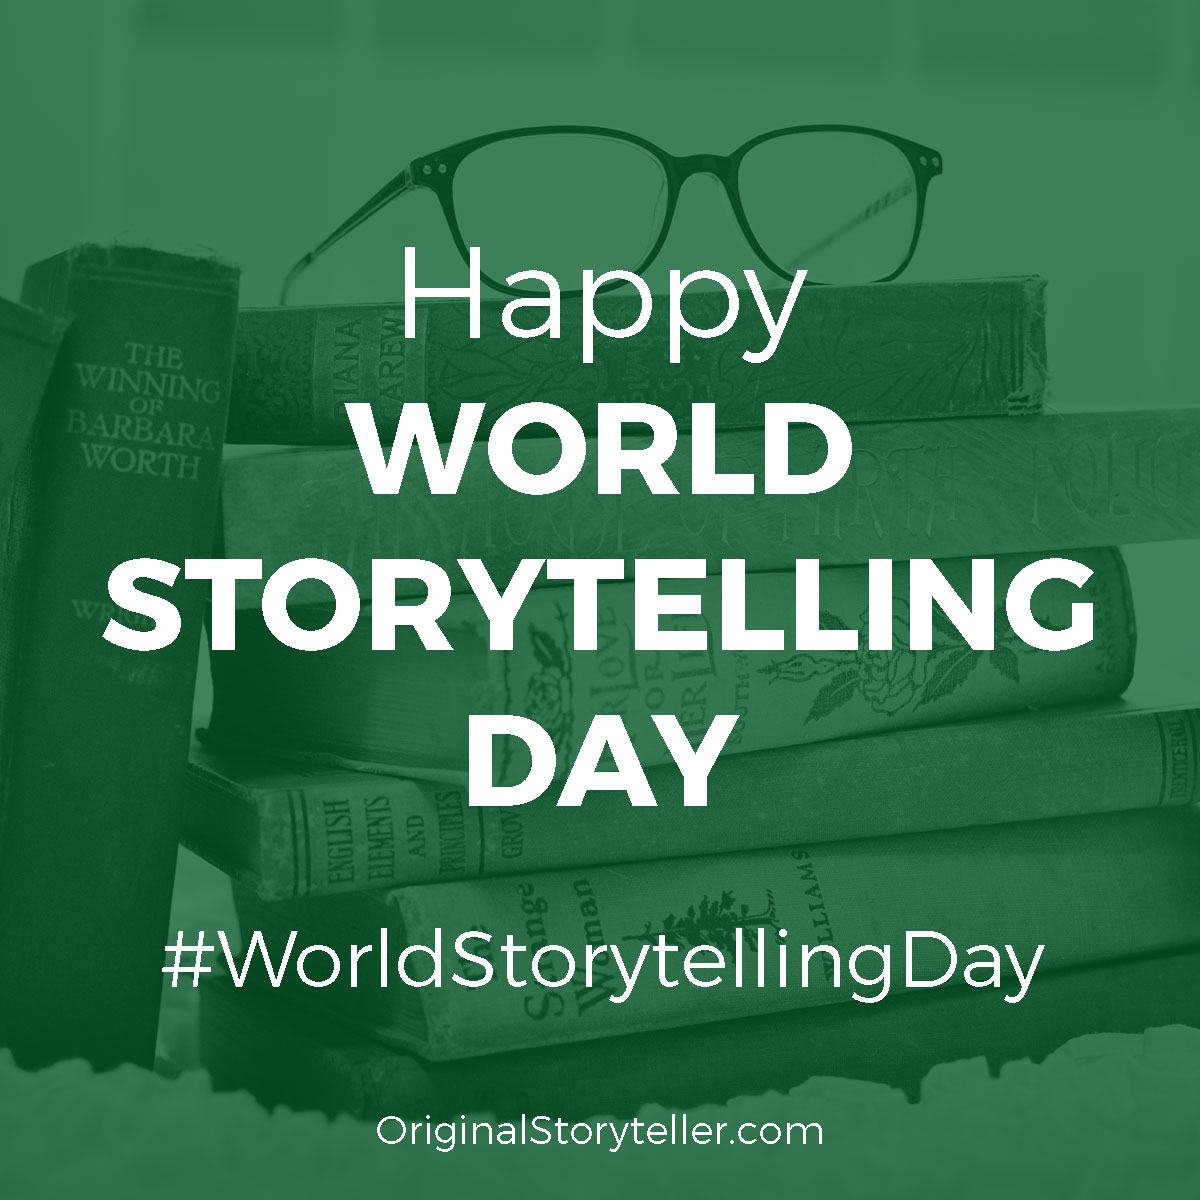 Happy World Storytelling Day!